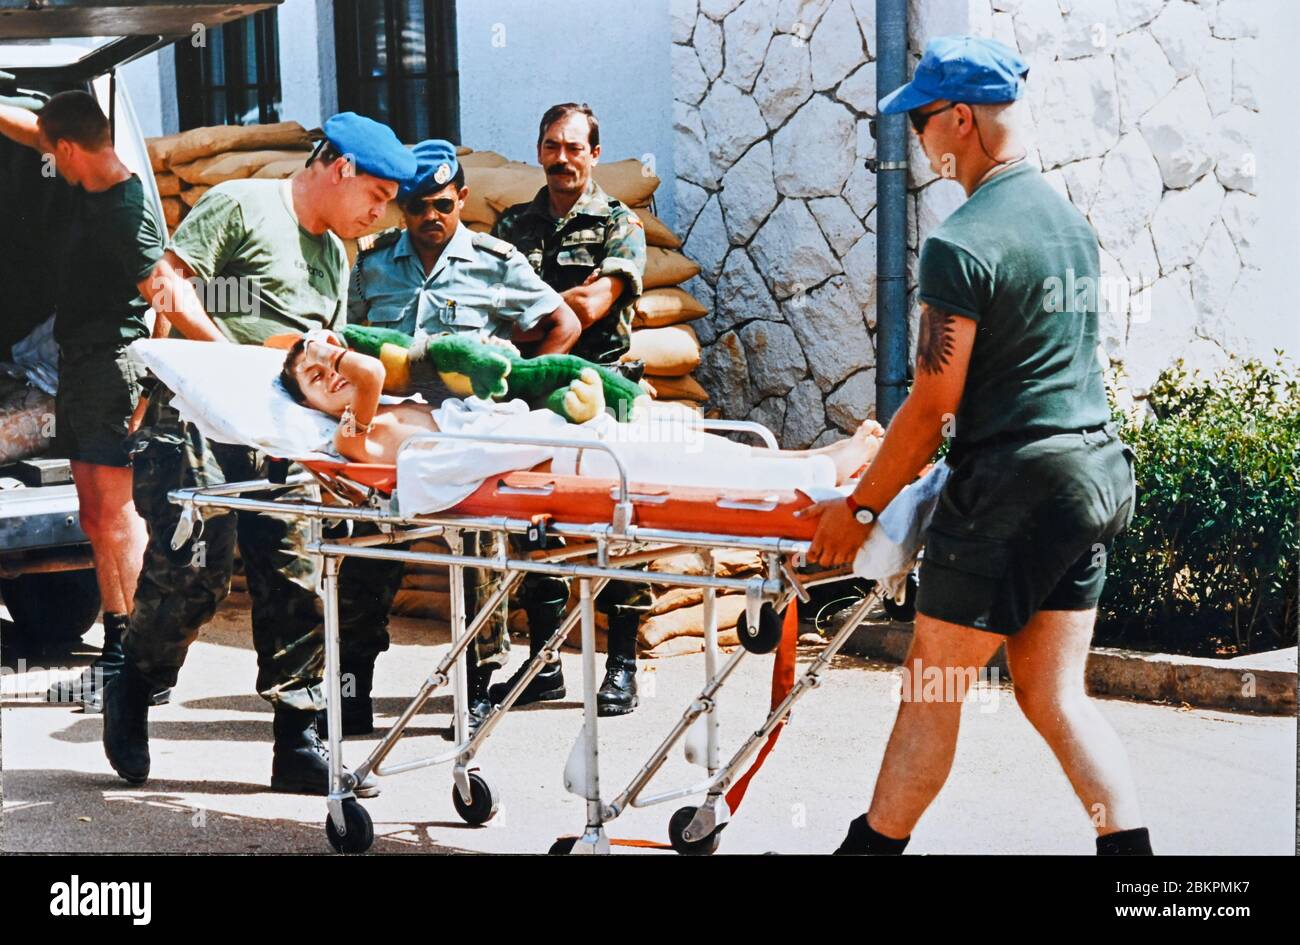 Bosnien 1993 bei Mostar während des Balkankrieges - Junge Kinder, die aus Mostar gerettet wurden, werden von UN-Truppen ins Krankenhaus gebracht Stockfoto